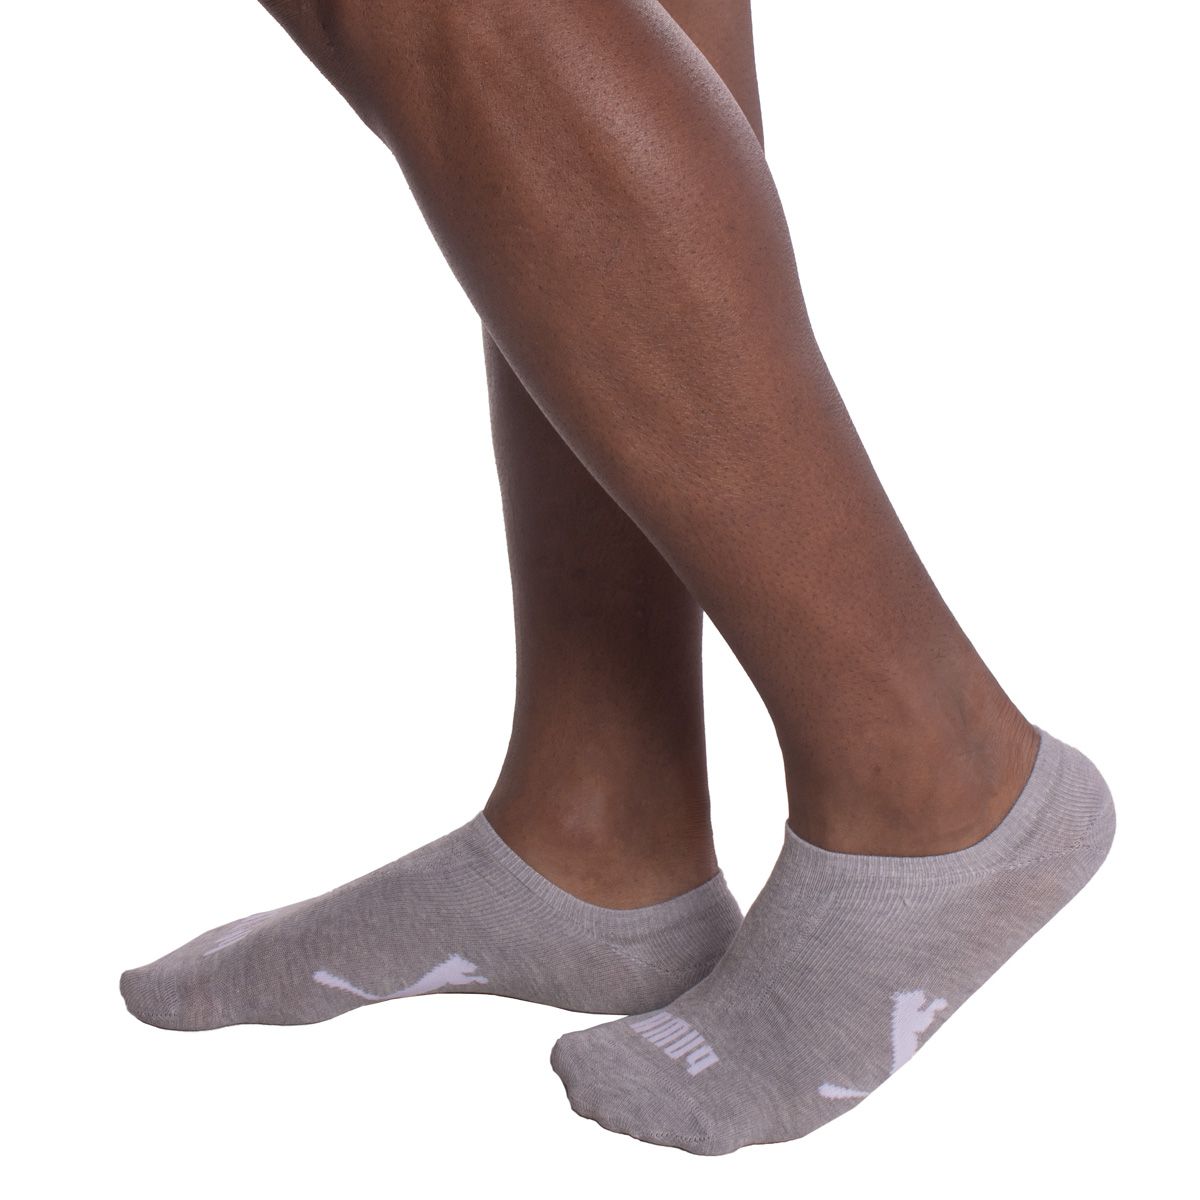 Kit com 3 pares de meias sapatilha esportiva masculina Puma